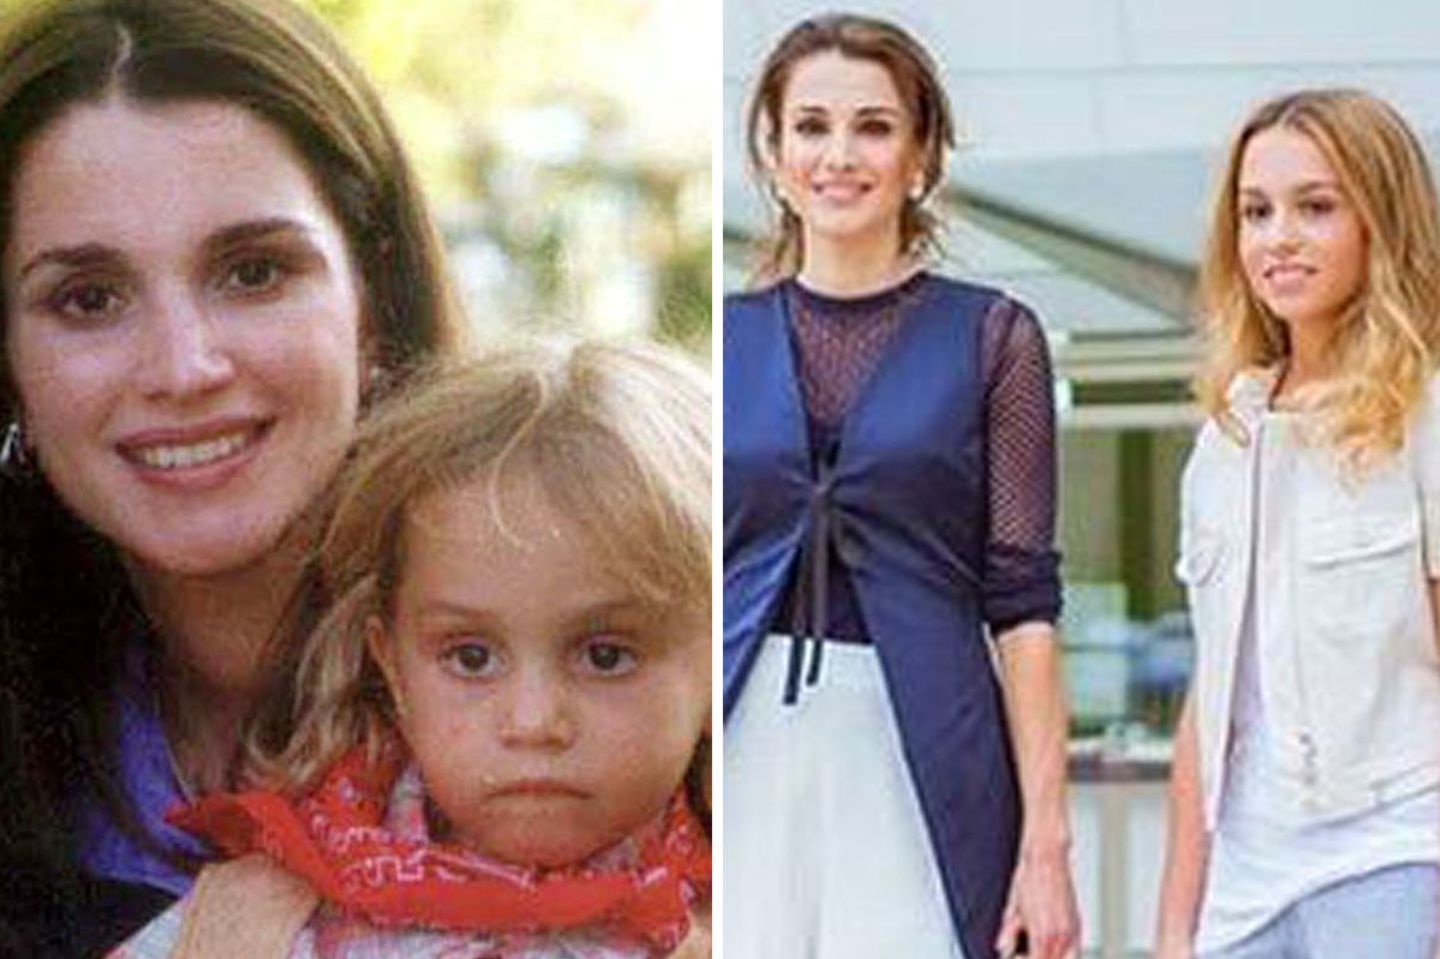 Prinzessin Iman: Königin Ranias Tochter ist die neue royale Stil-Ikone